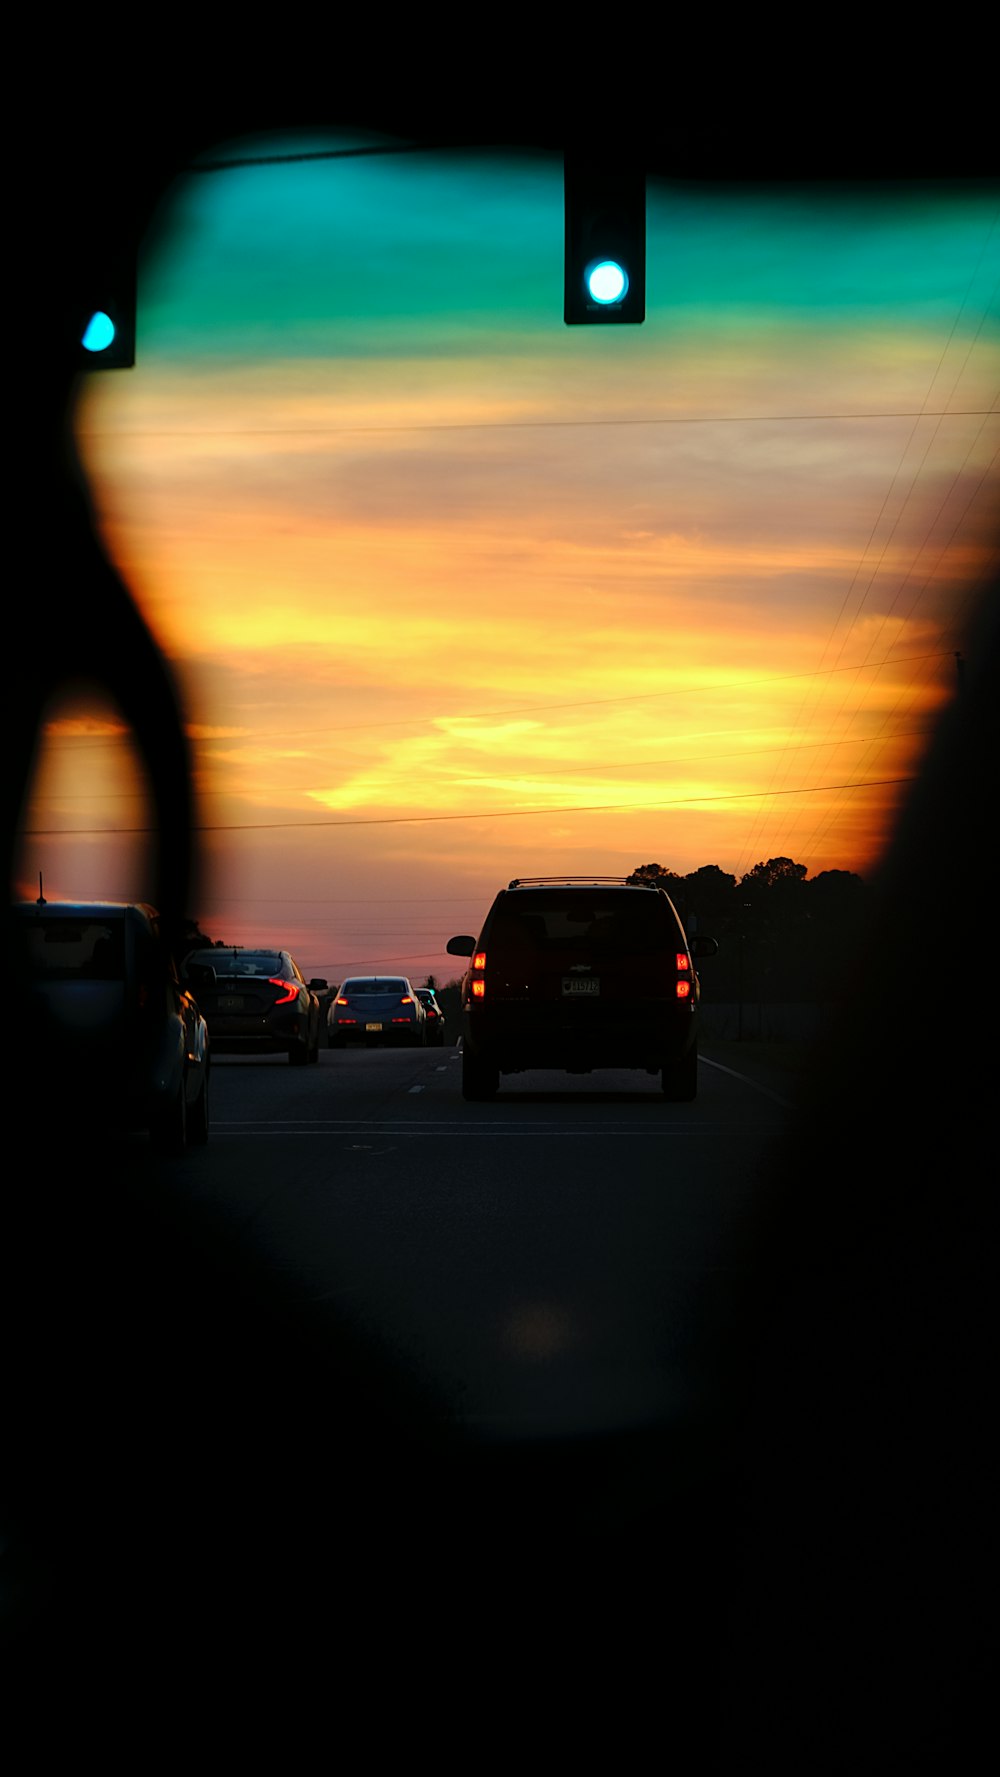 Un coucher de soleil vu à travers le rétroviseur d’une voiture